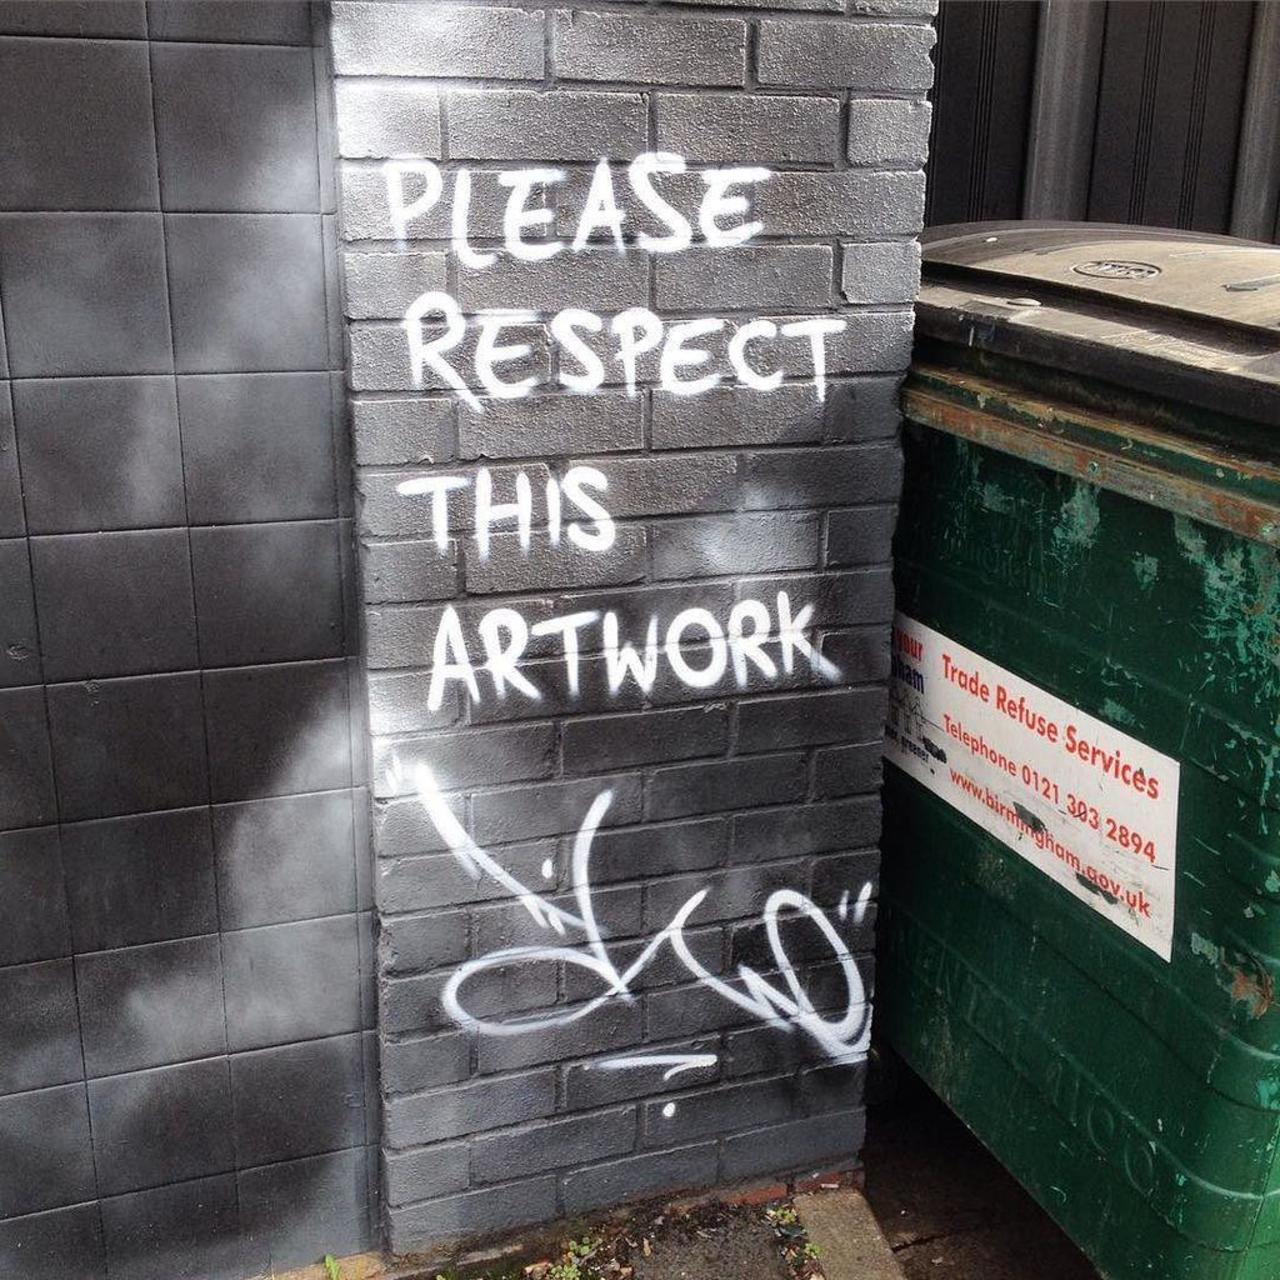 RT @artpushr: via #np4tterson "http://ift.tt/1MvTmZY" #graffiti #streetart http://t.co/4UHNitjllG